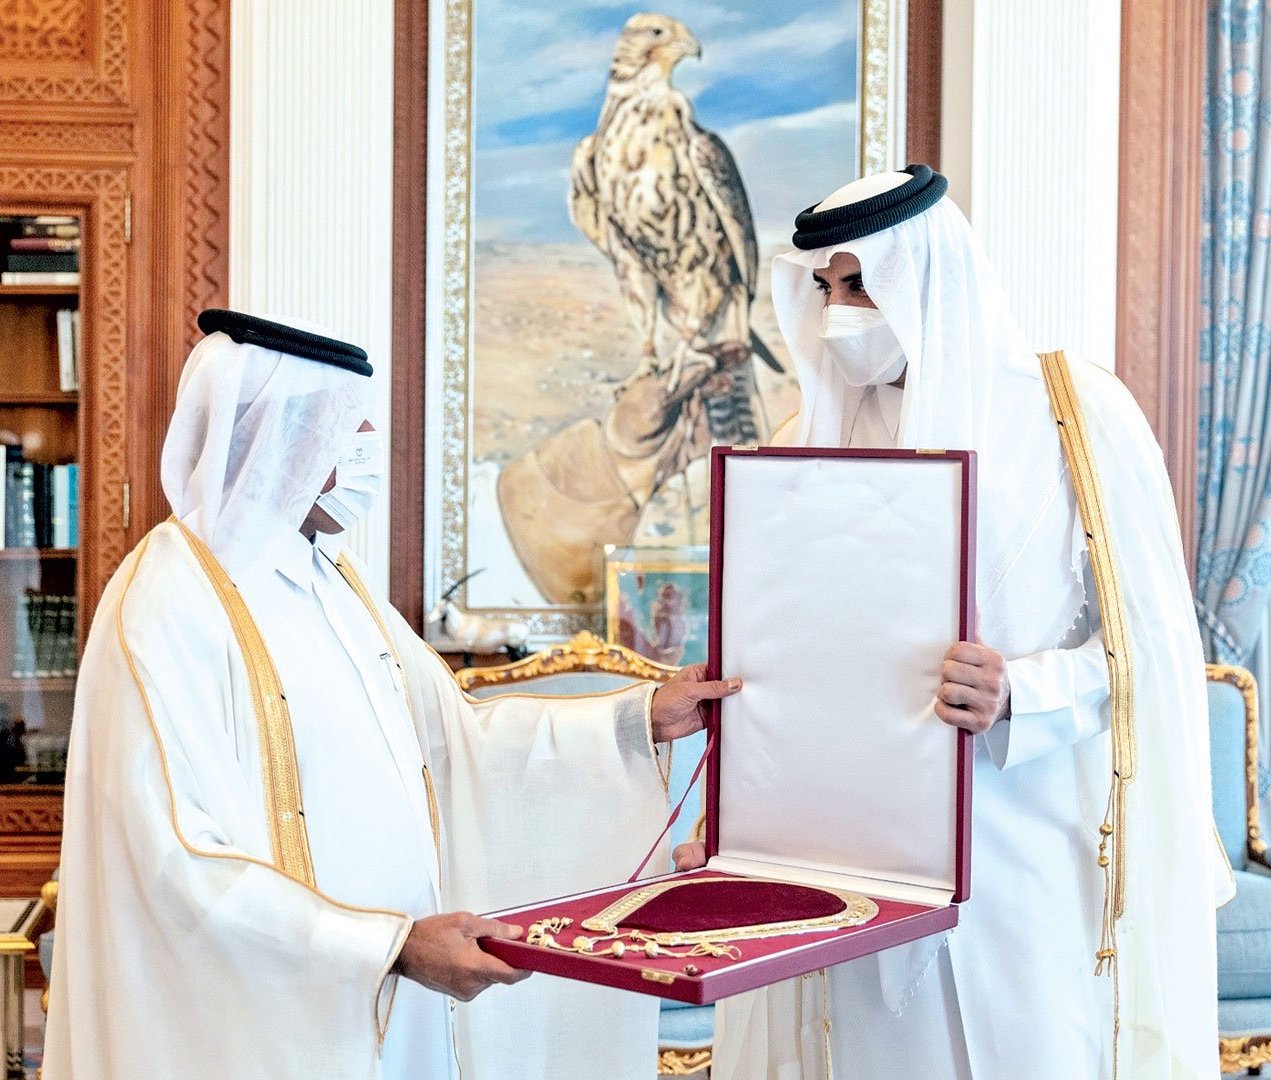 HH the Amir Awards Hamad Bin Khalifa Sash to HE Sheikh Abdullah bin Saud Al-Thani